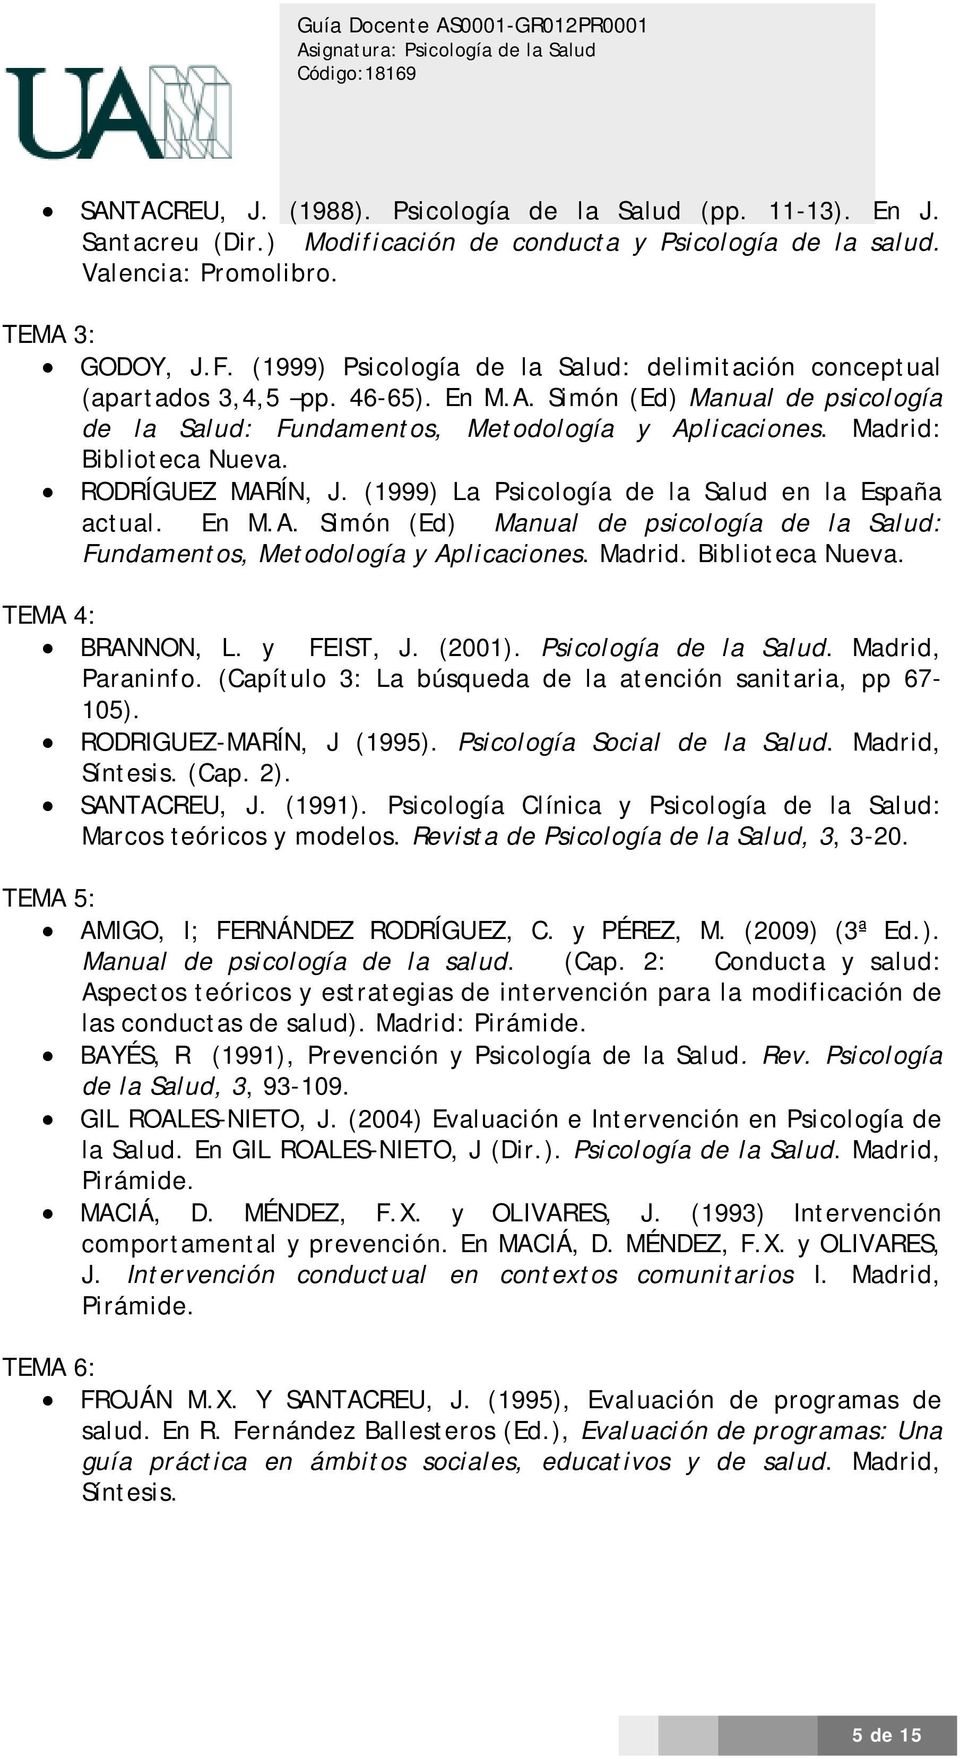 Madrid: Biblioteca Nueva. RODRÍGUEZ MARÍN, J. (1999) La Psicología de la Salud en la España actual. En M.A. Simón (Ed) Manual de psicología de la Salud: Fundamentos, Metodología y Aplicaciones.